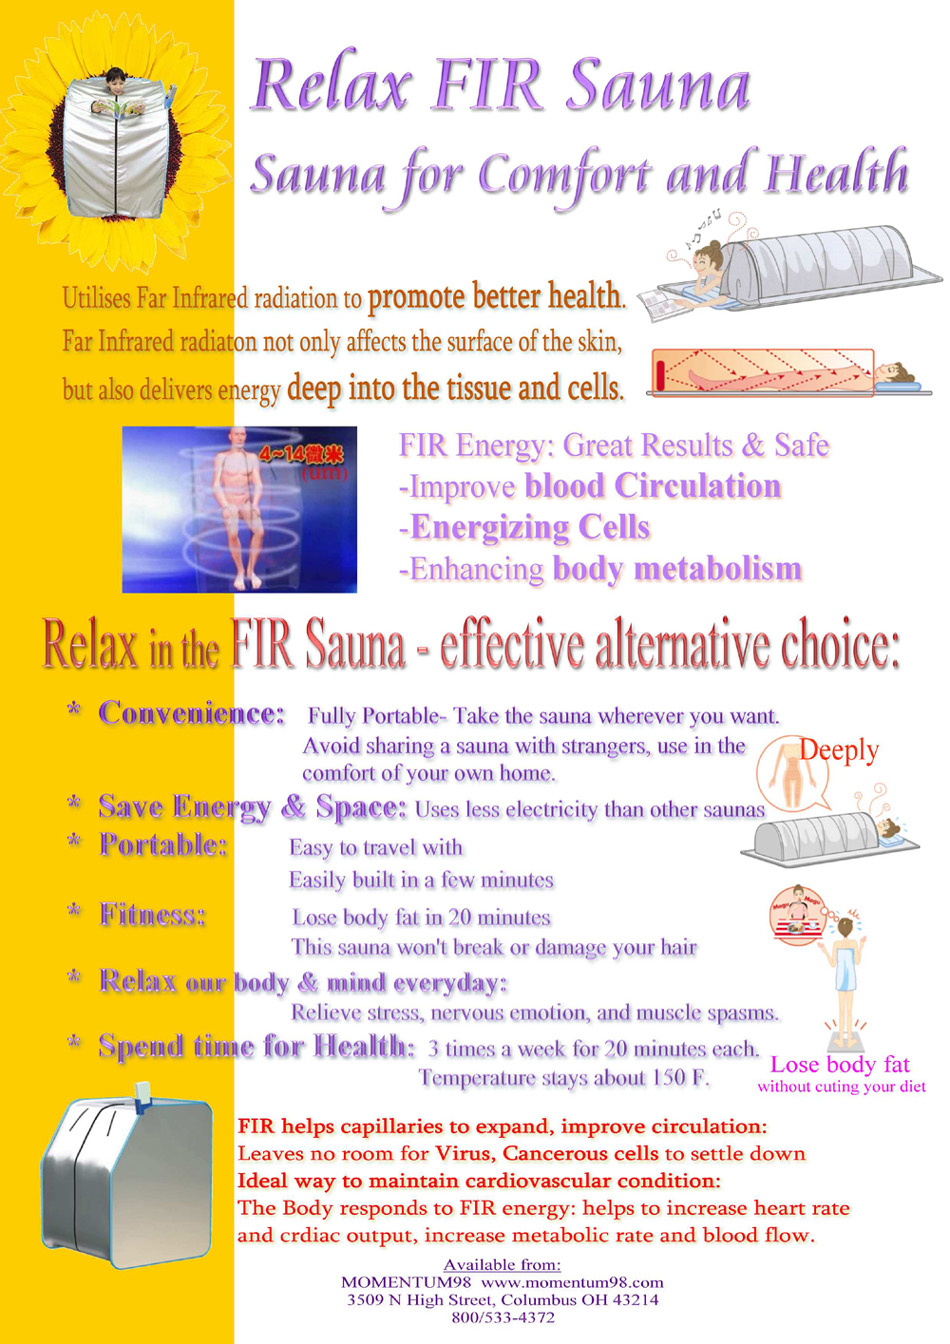 relax far infrared sauna poster